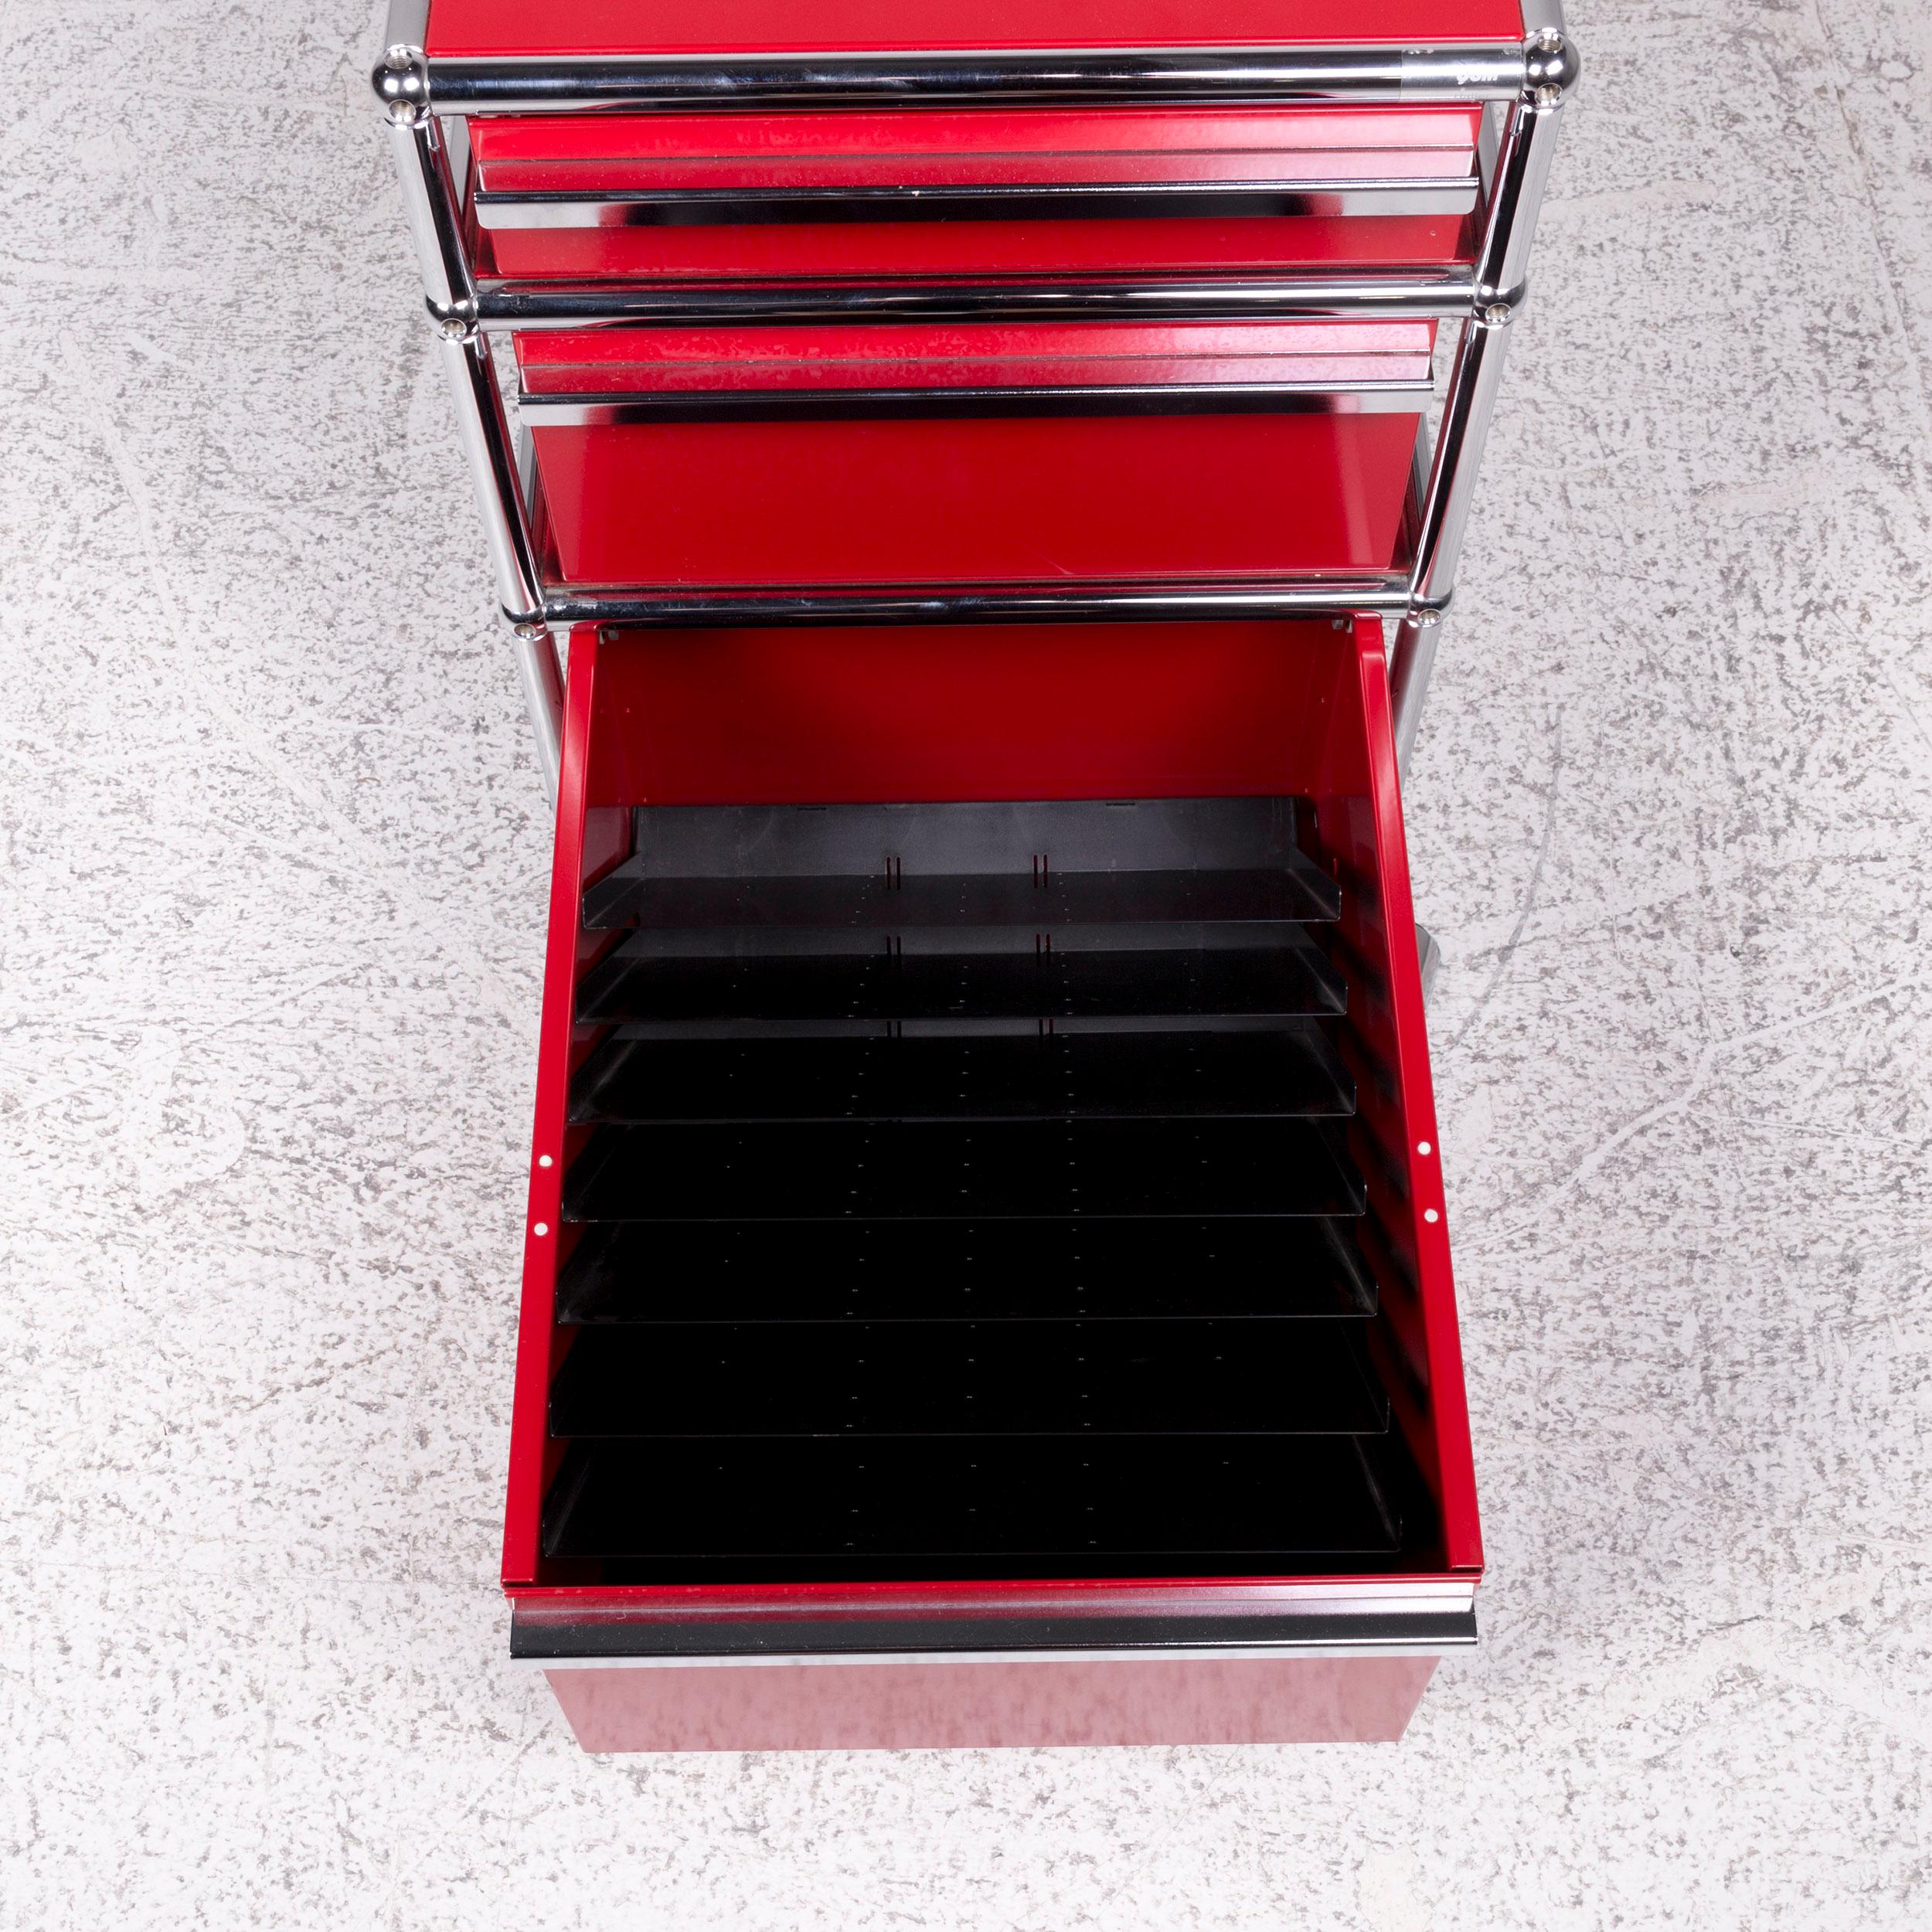 USM Haller Metal Shelf Sideboard Rollcontainer Set 3 Drawers Red 11